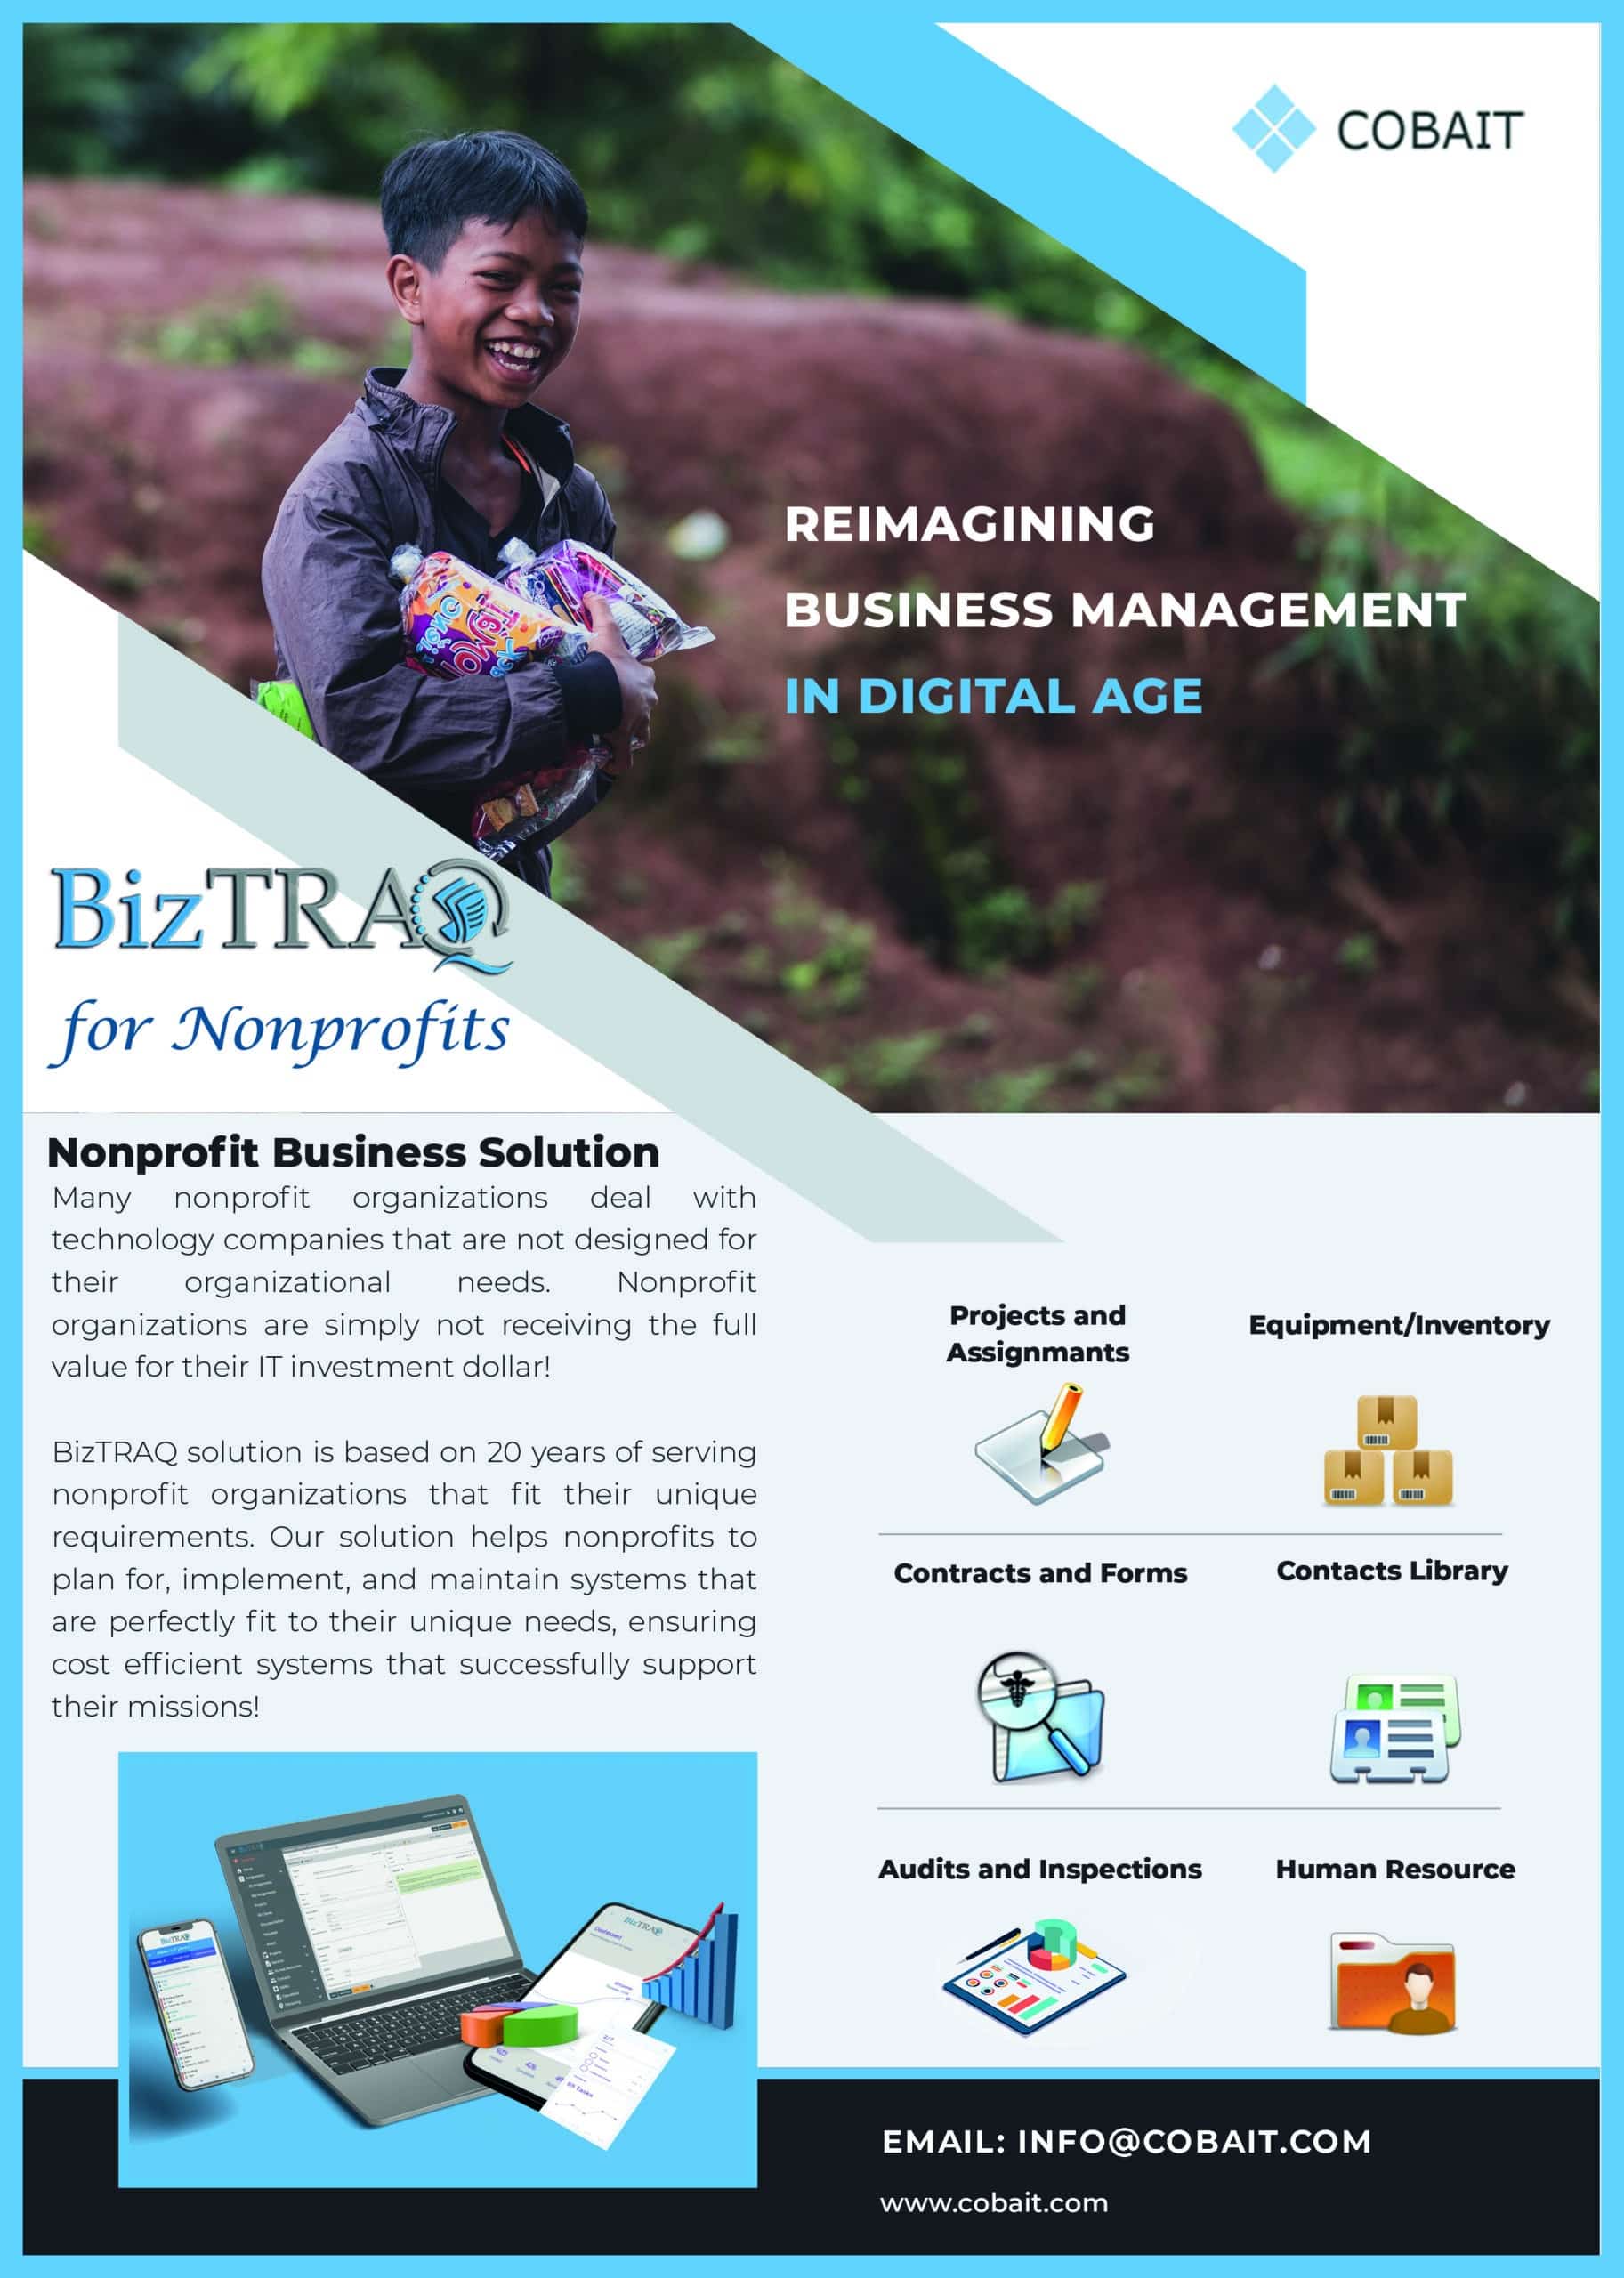 BizTRAQ IT for nonprofits